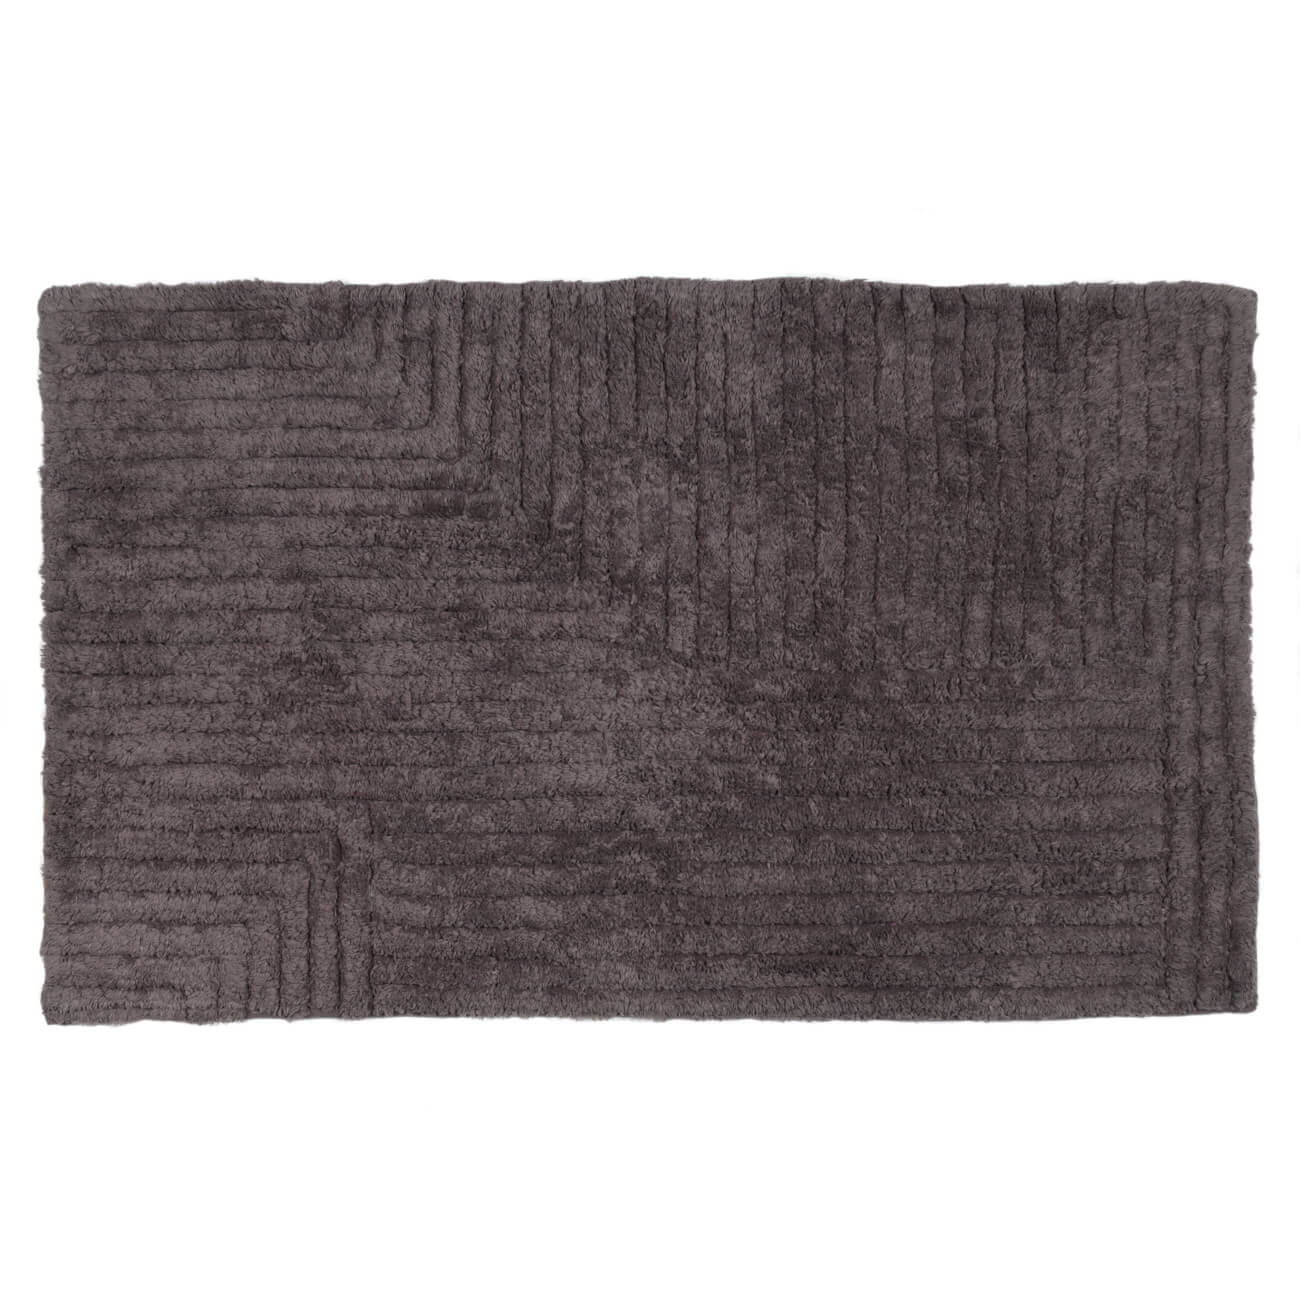 Коврик, 50х80 см, хлопок, серо-коричневый, Геометрия, Cage pattern коврик для туалета fora